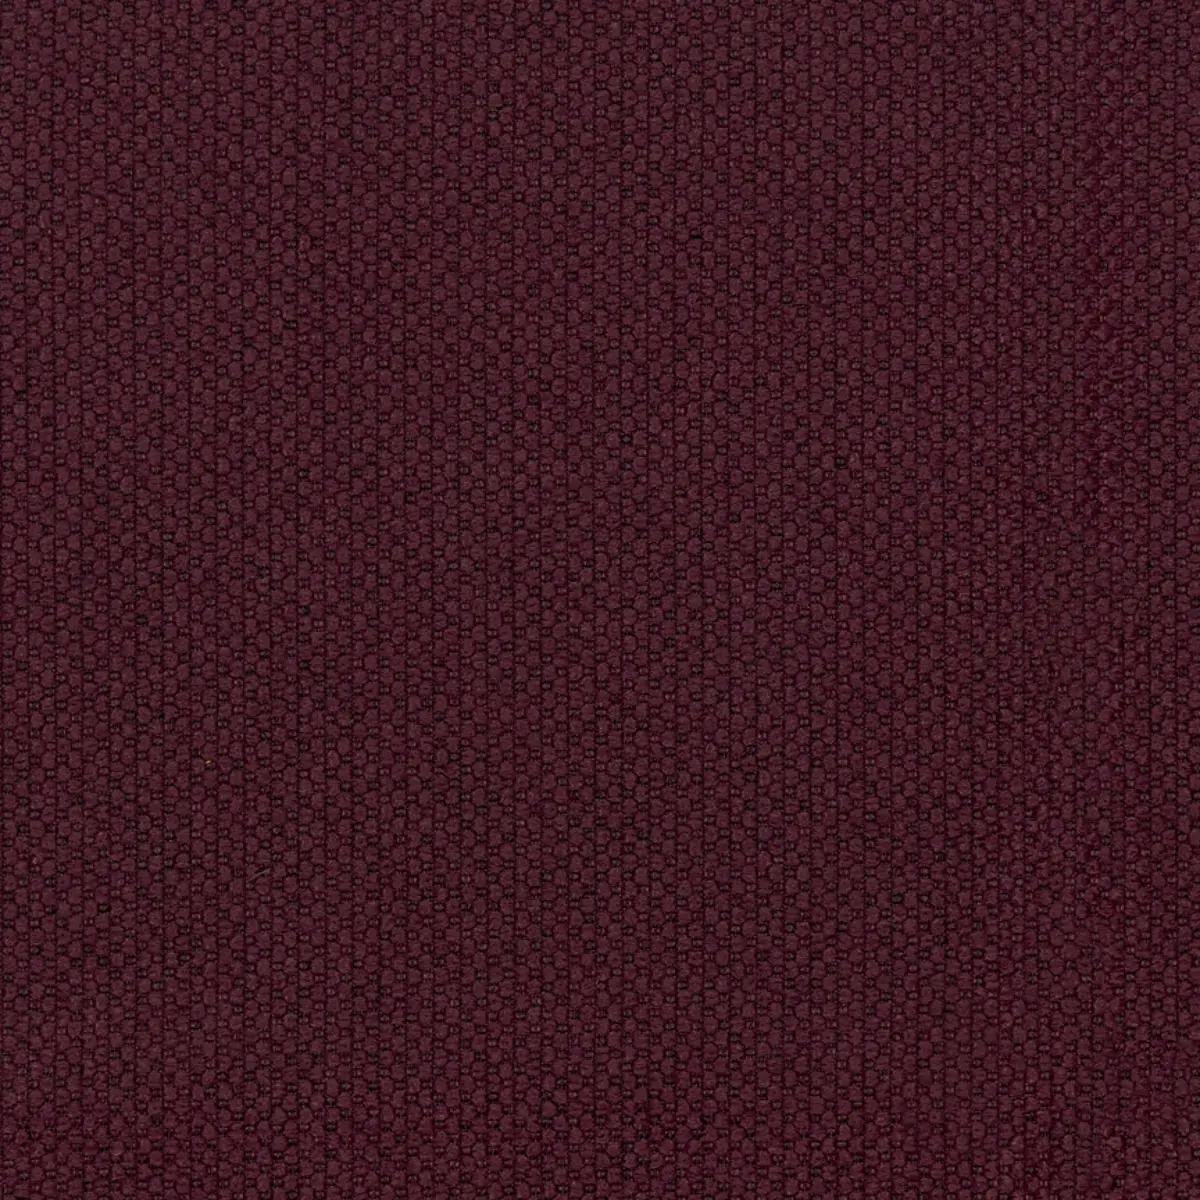 Fabric sample Merit 0040 purple